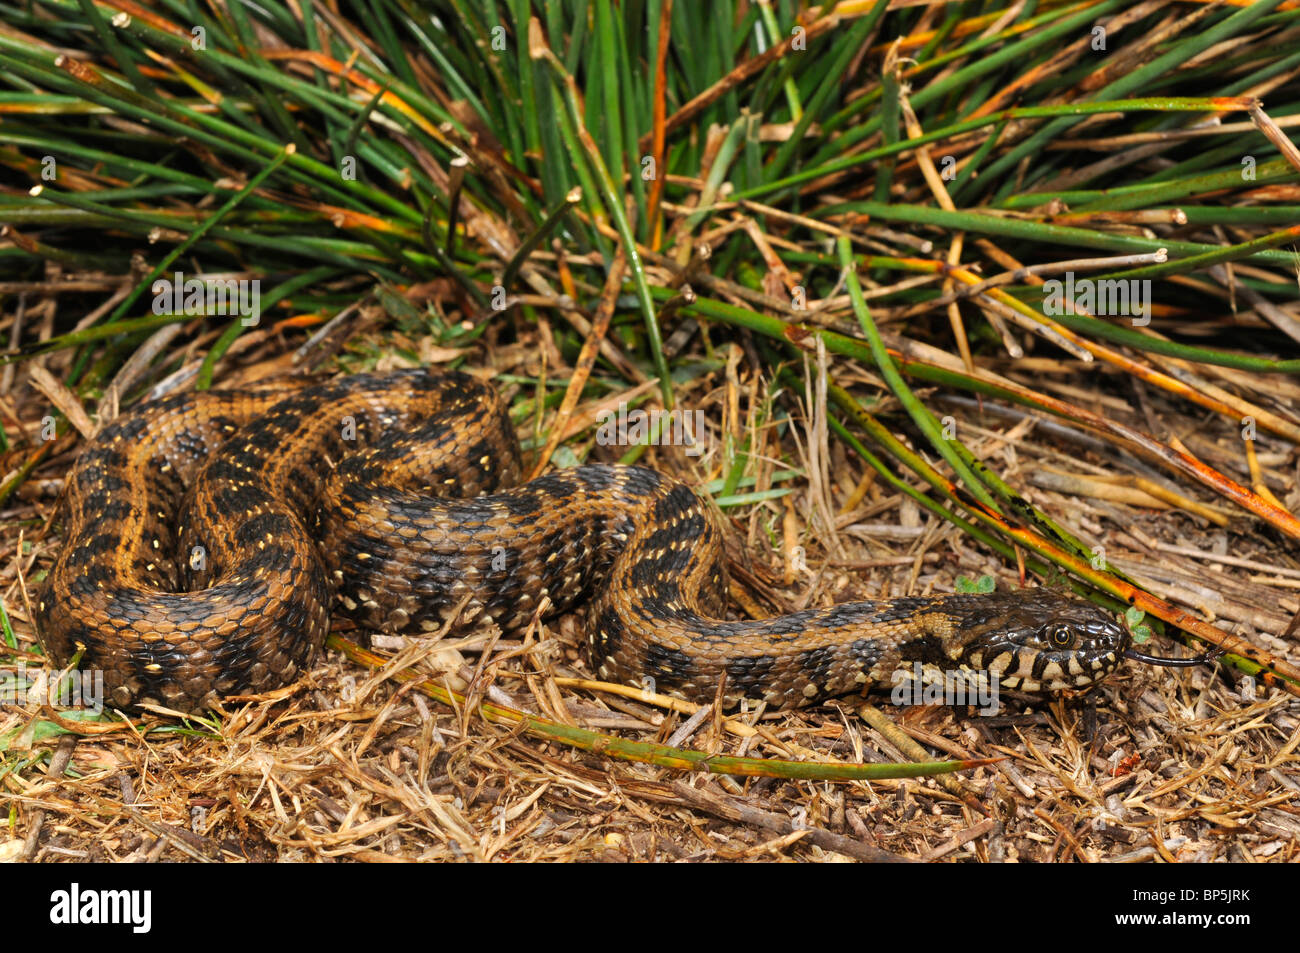 Viperine snake, viperine biscia dal collare (natrix maura), striscianti e sfogliare, Spagna, Andalusia, Nationalpark Donana. Foto Stock